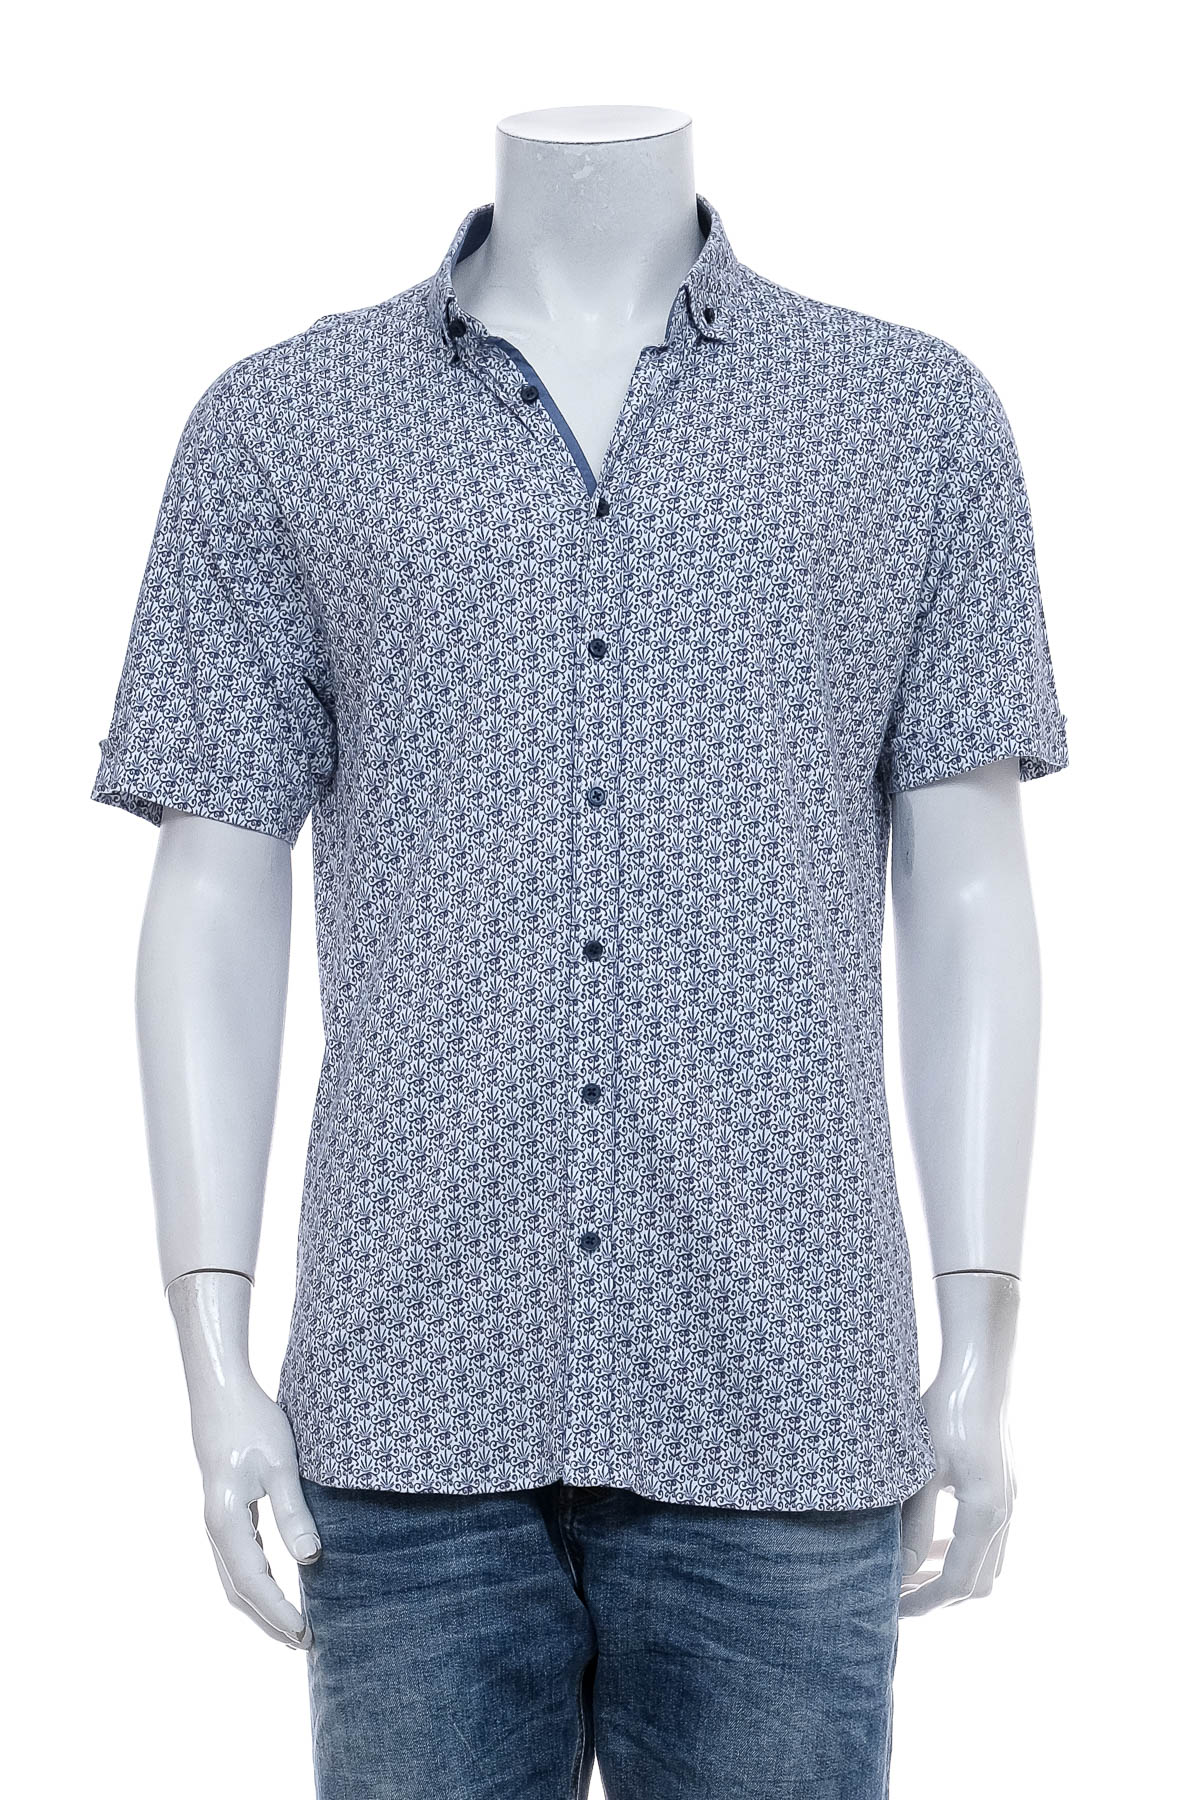 Ανδρικό πουκάμισο - Desoto - 0